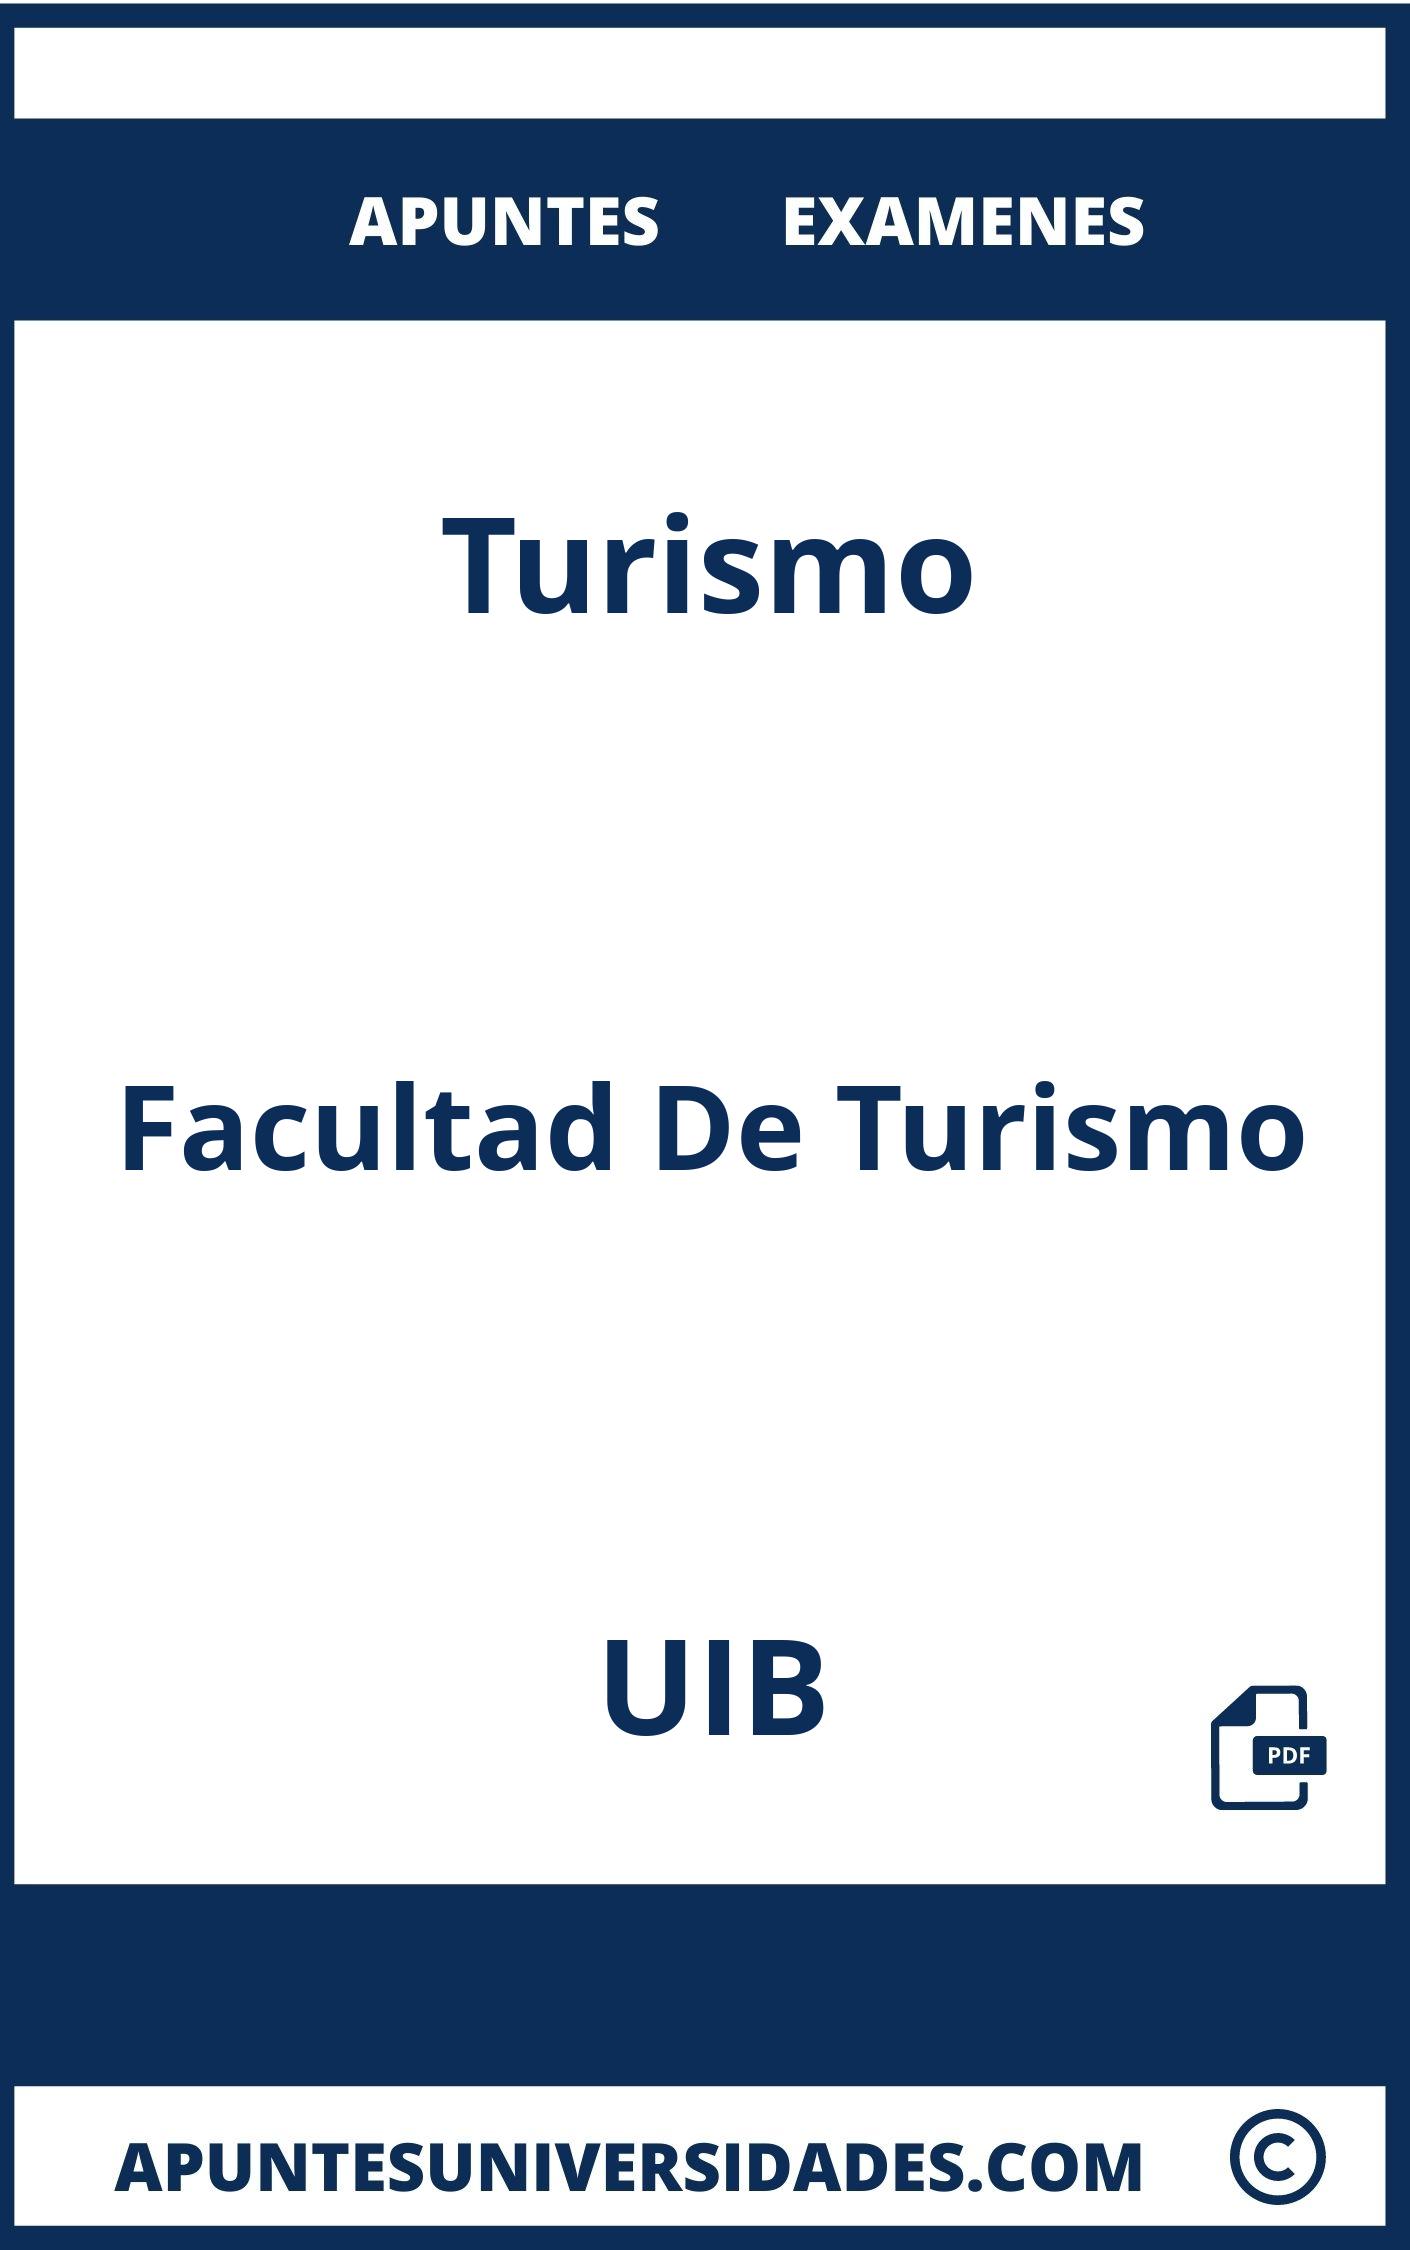 Examenes y Apuntes de Turismo UIB